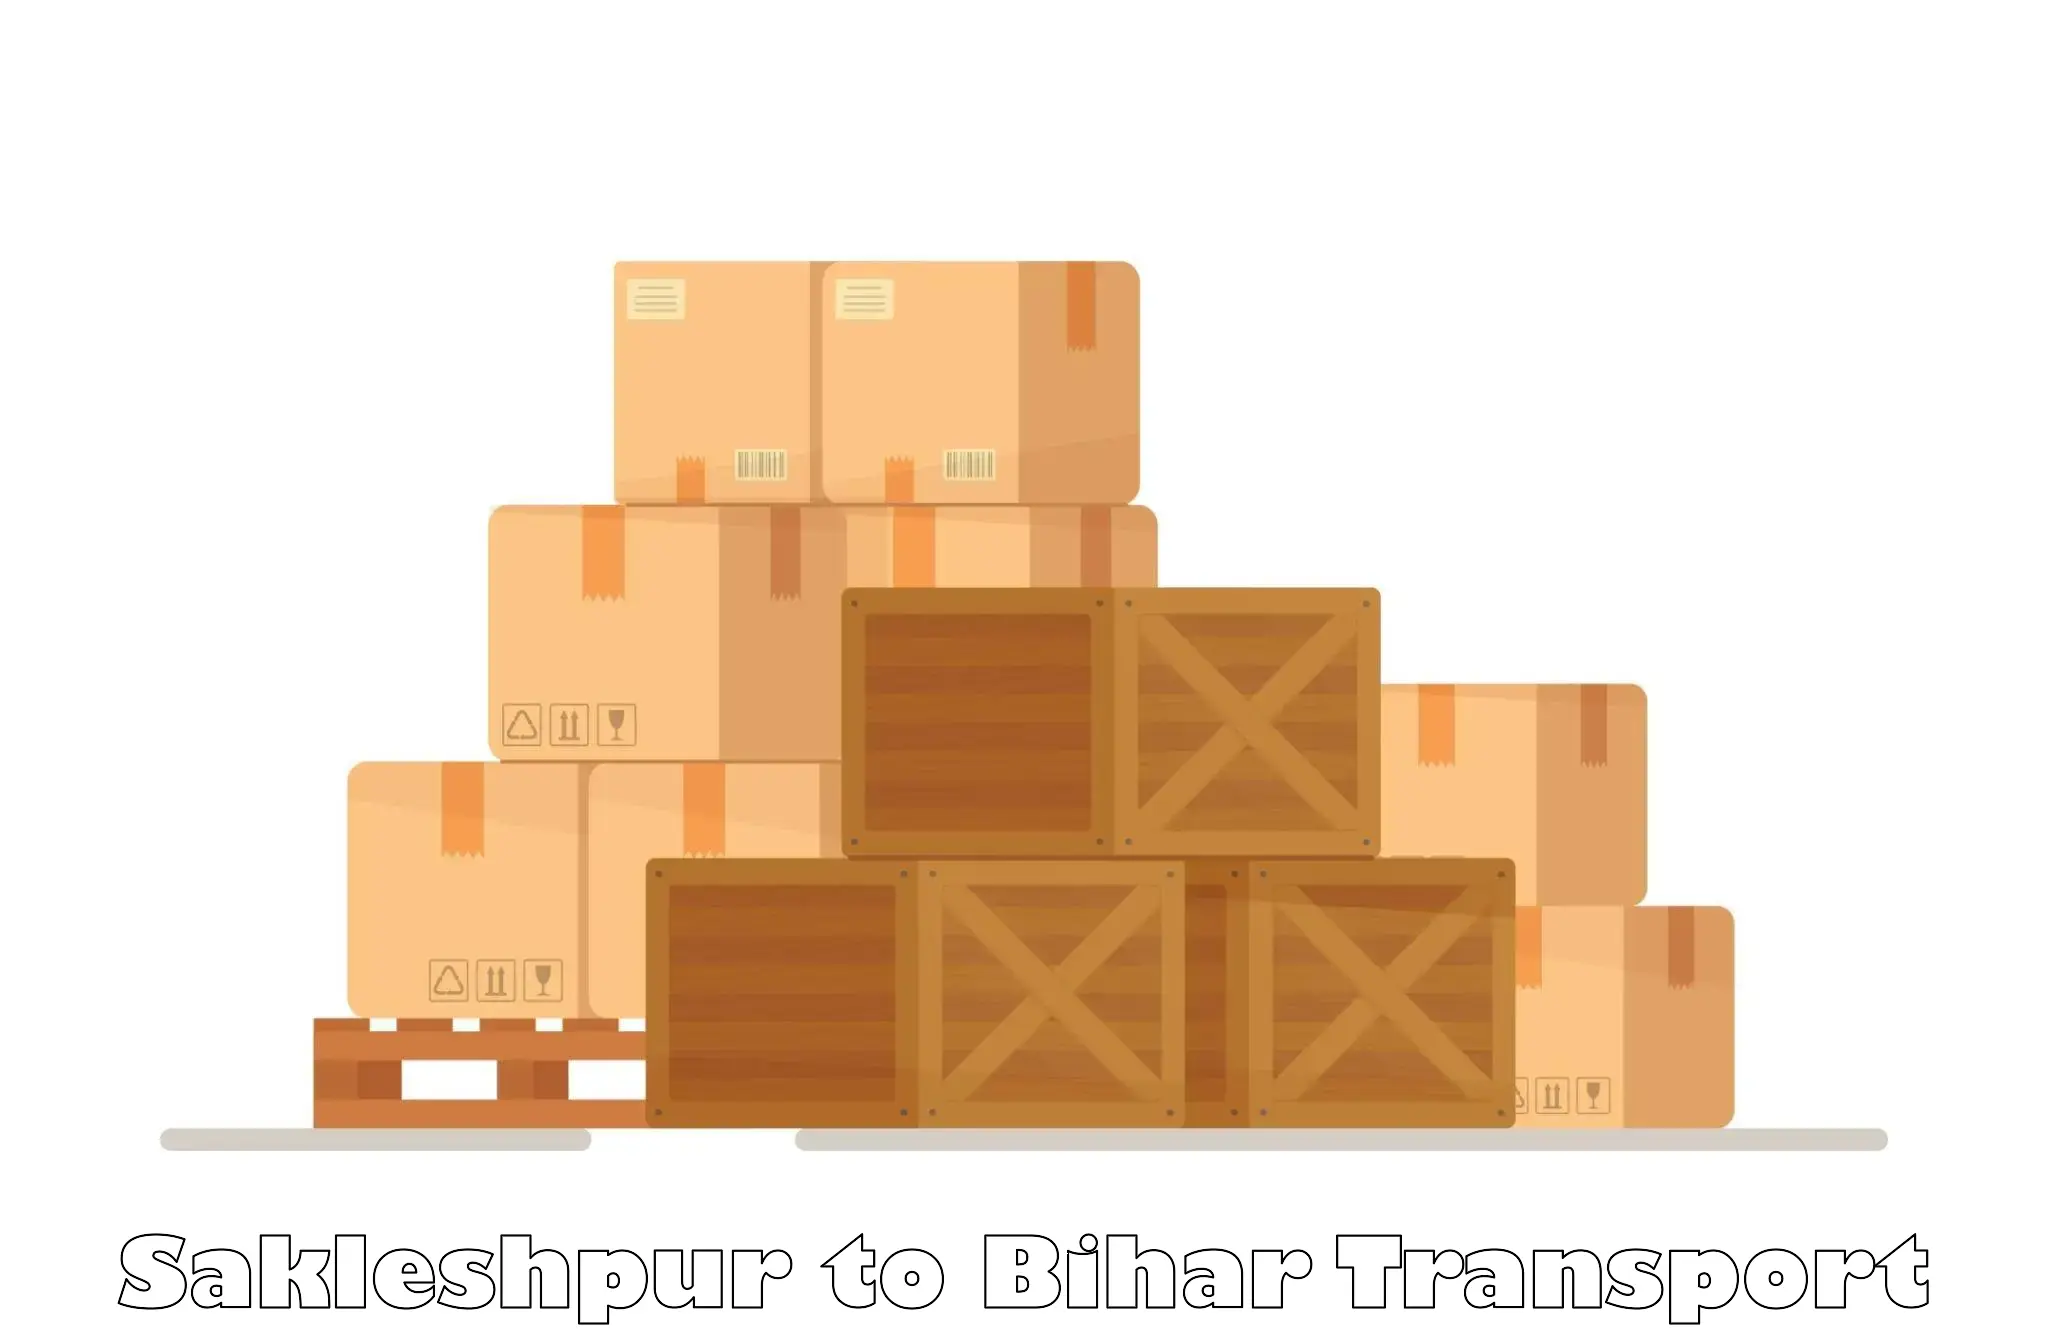 Lorry transport service Sakleshpur to Siwan